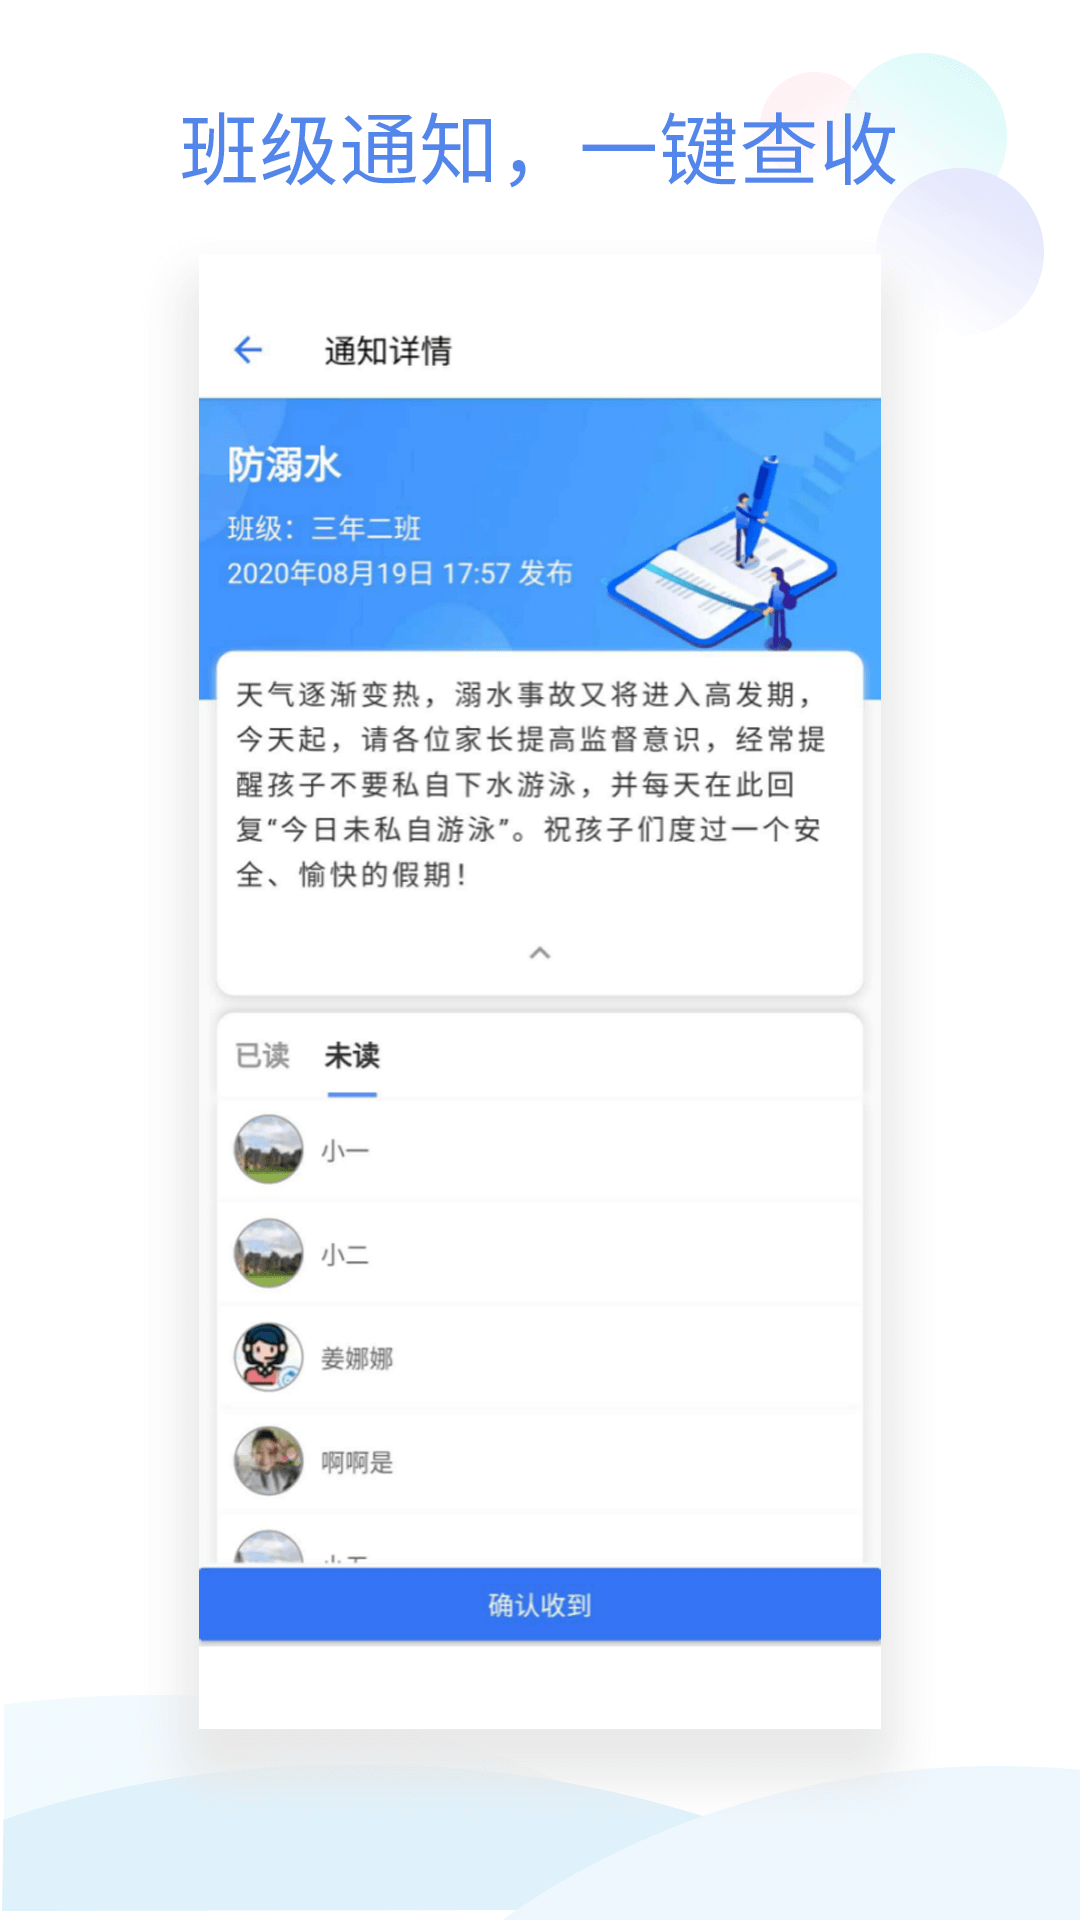 新版小蓝同志交友软件app_小蓝同志交友软件app应用v2.0.0